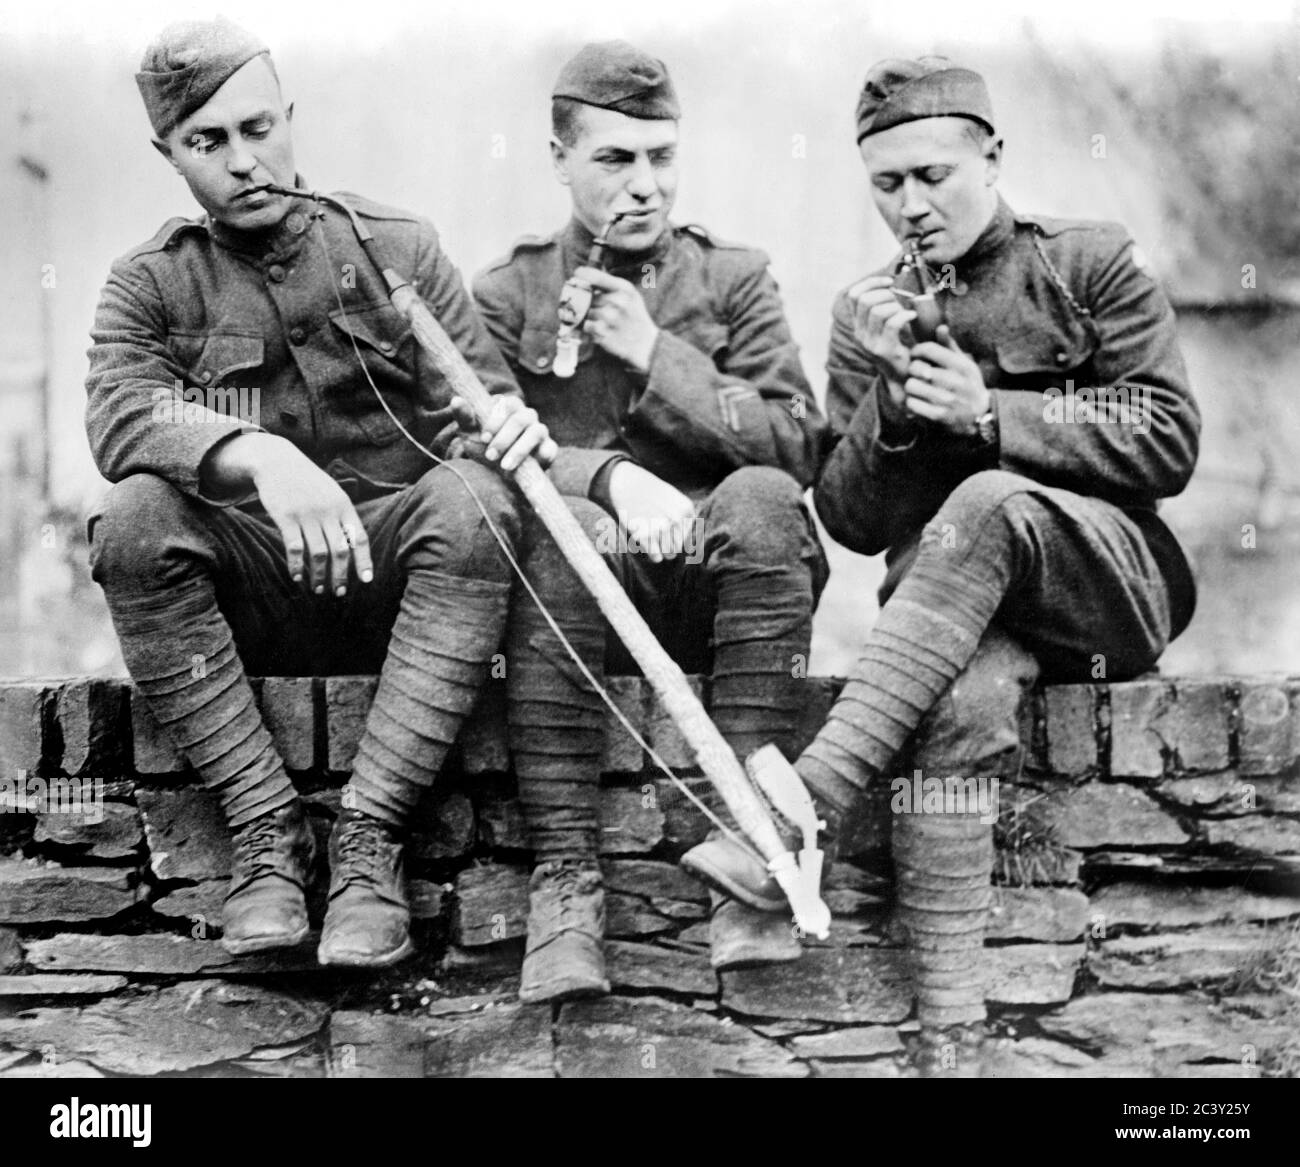 Tre soldati americani fumano pipe alla fine della prima guerra mondiale, Cochem, Germania, Bain News Service, 1919 Foto Stock